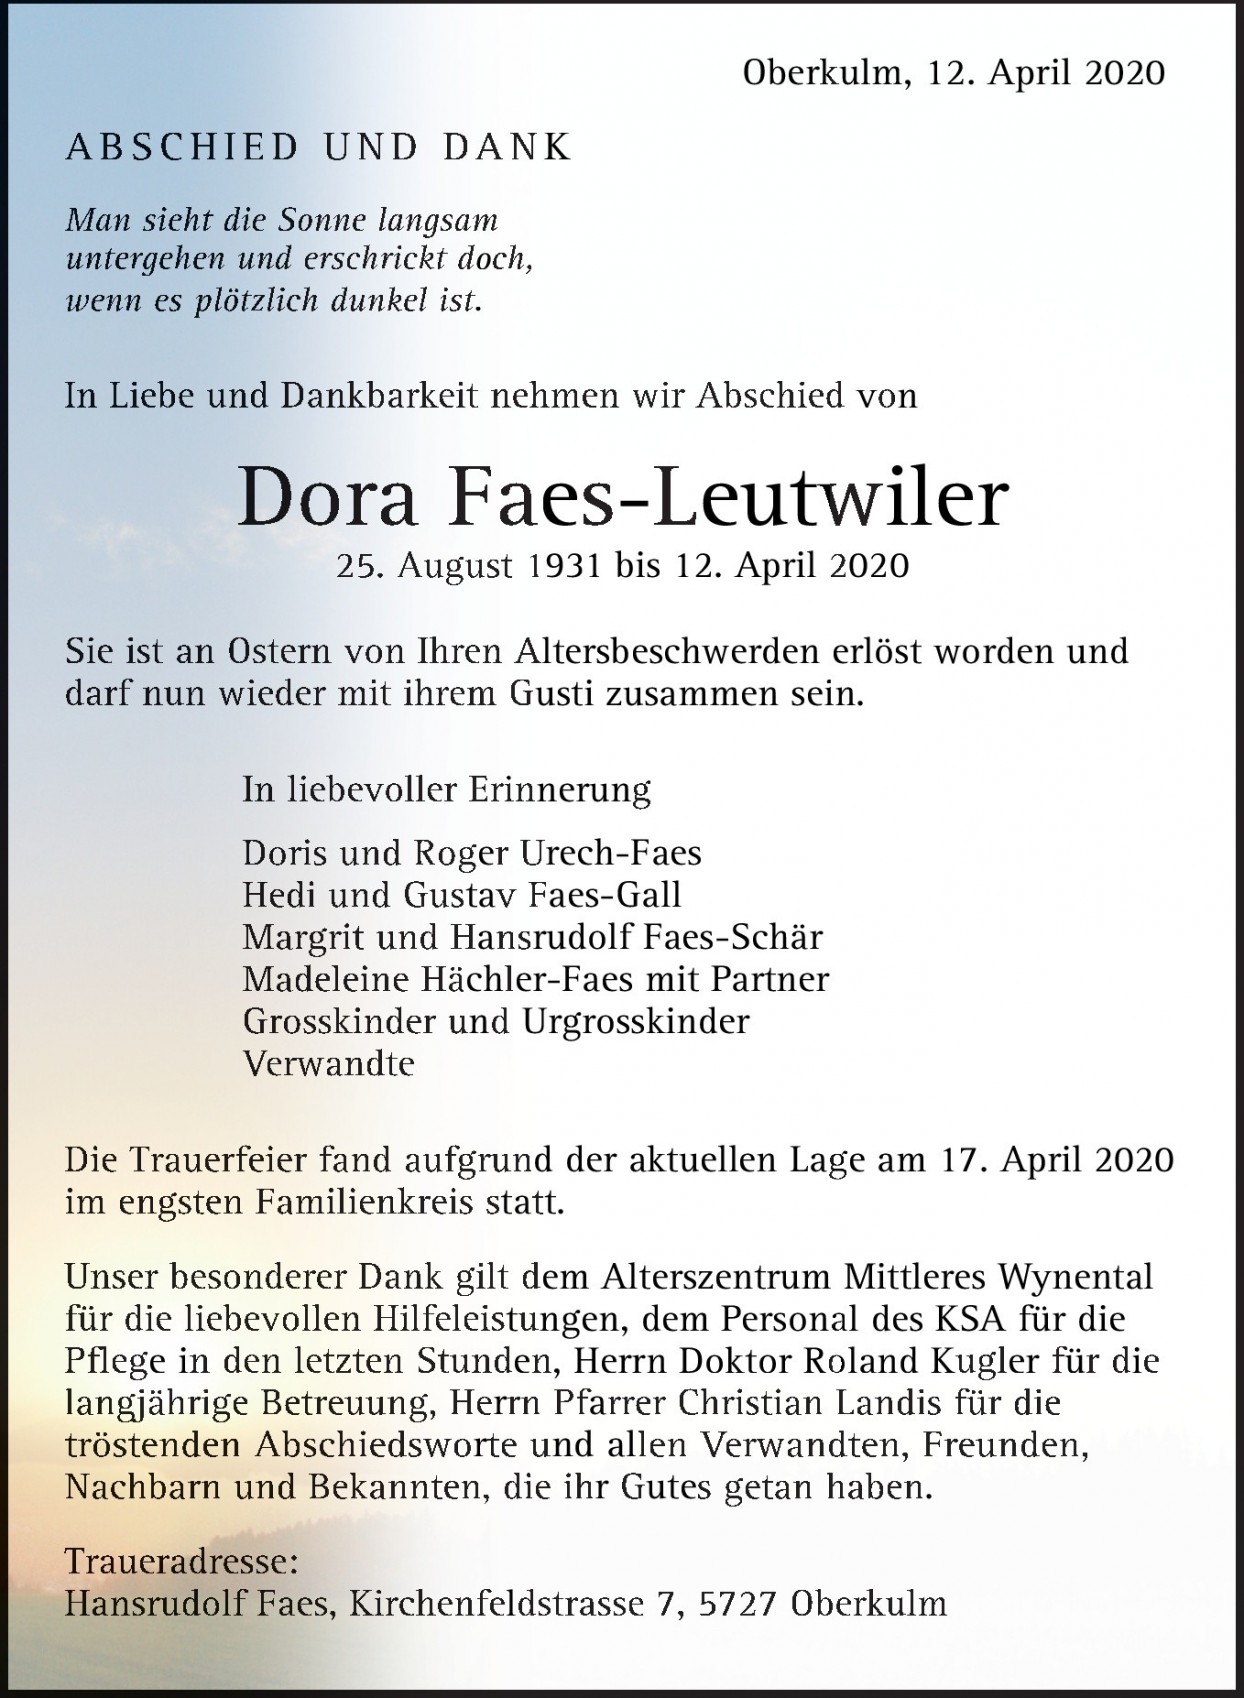 Dora Faes-Leutwiler